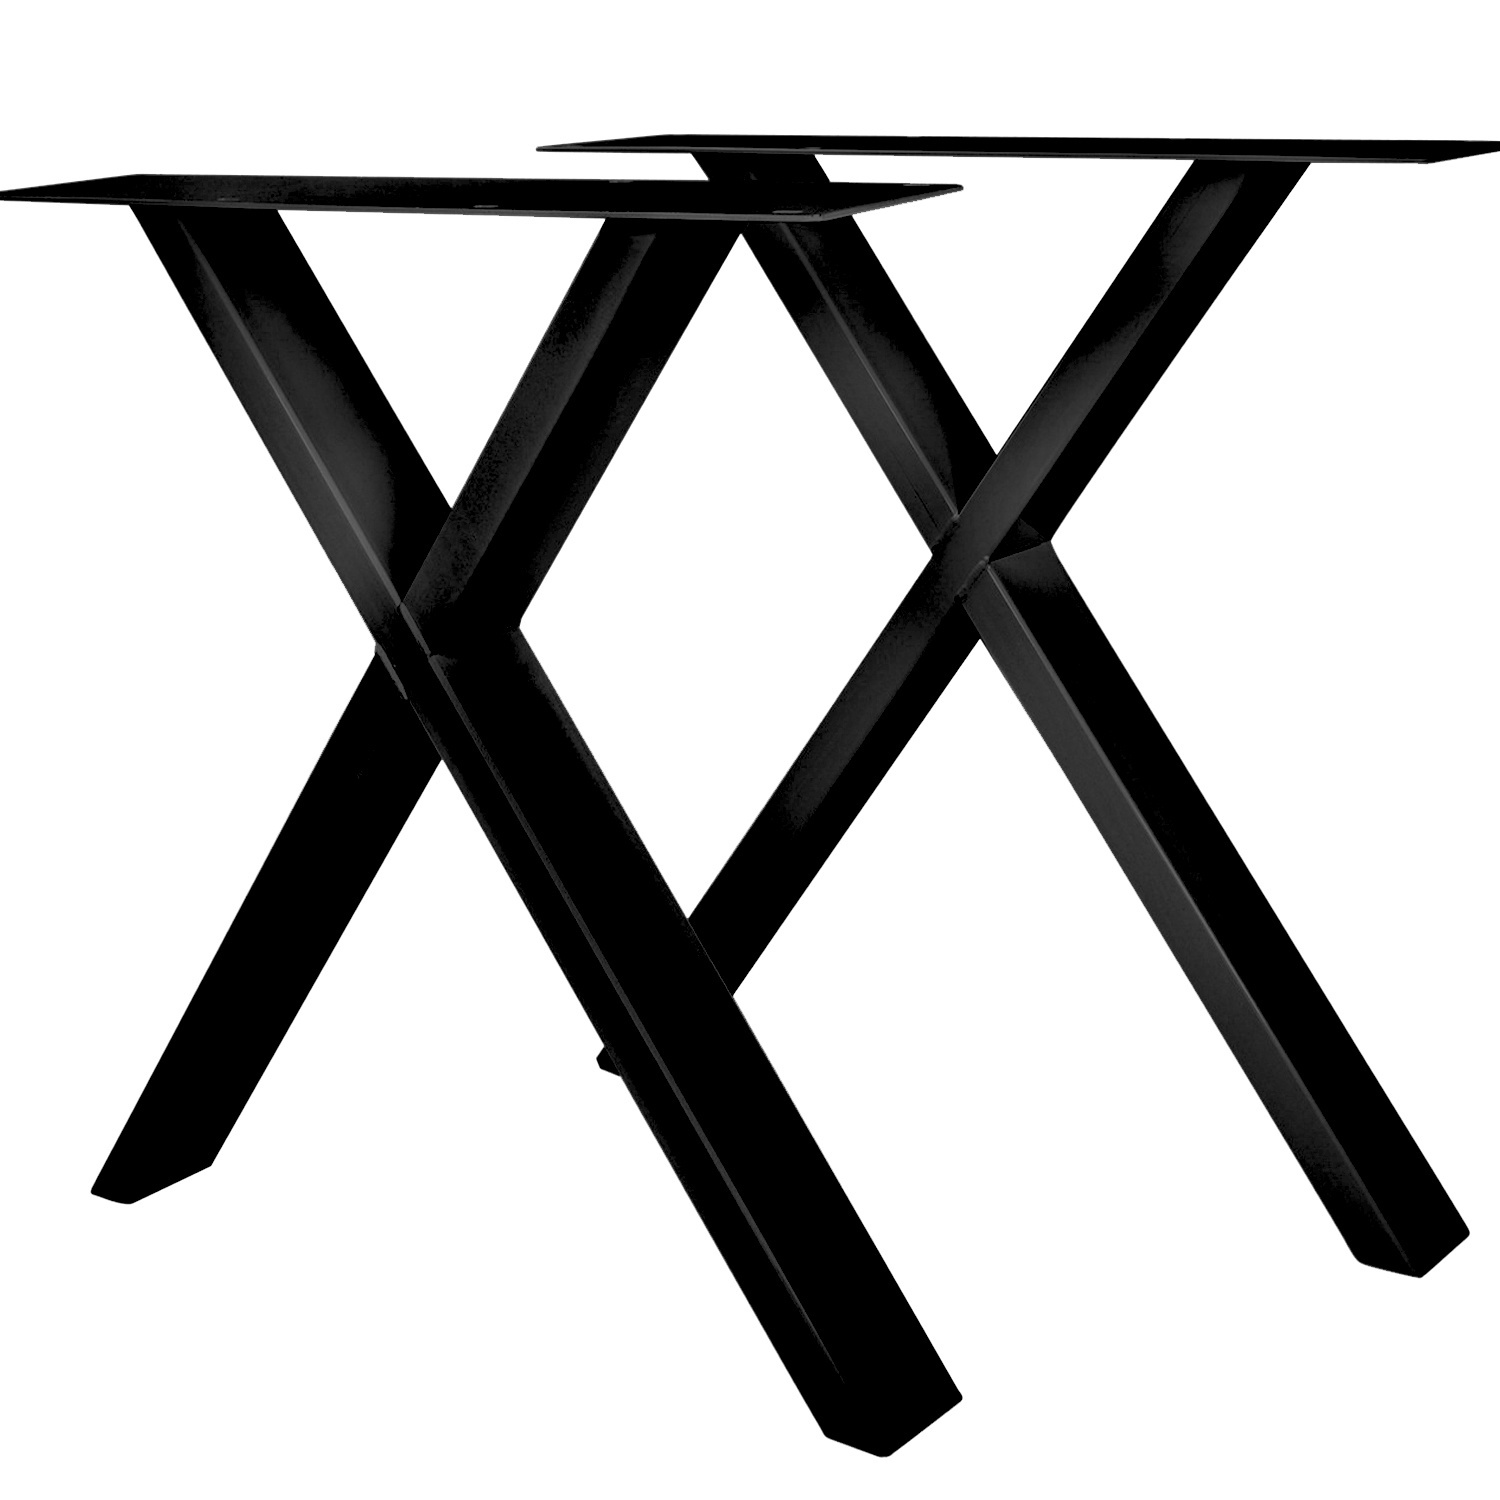 Tischbeine X metall / stahl schlank 2x10 cm - Schwarz beschichtet!